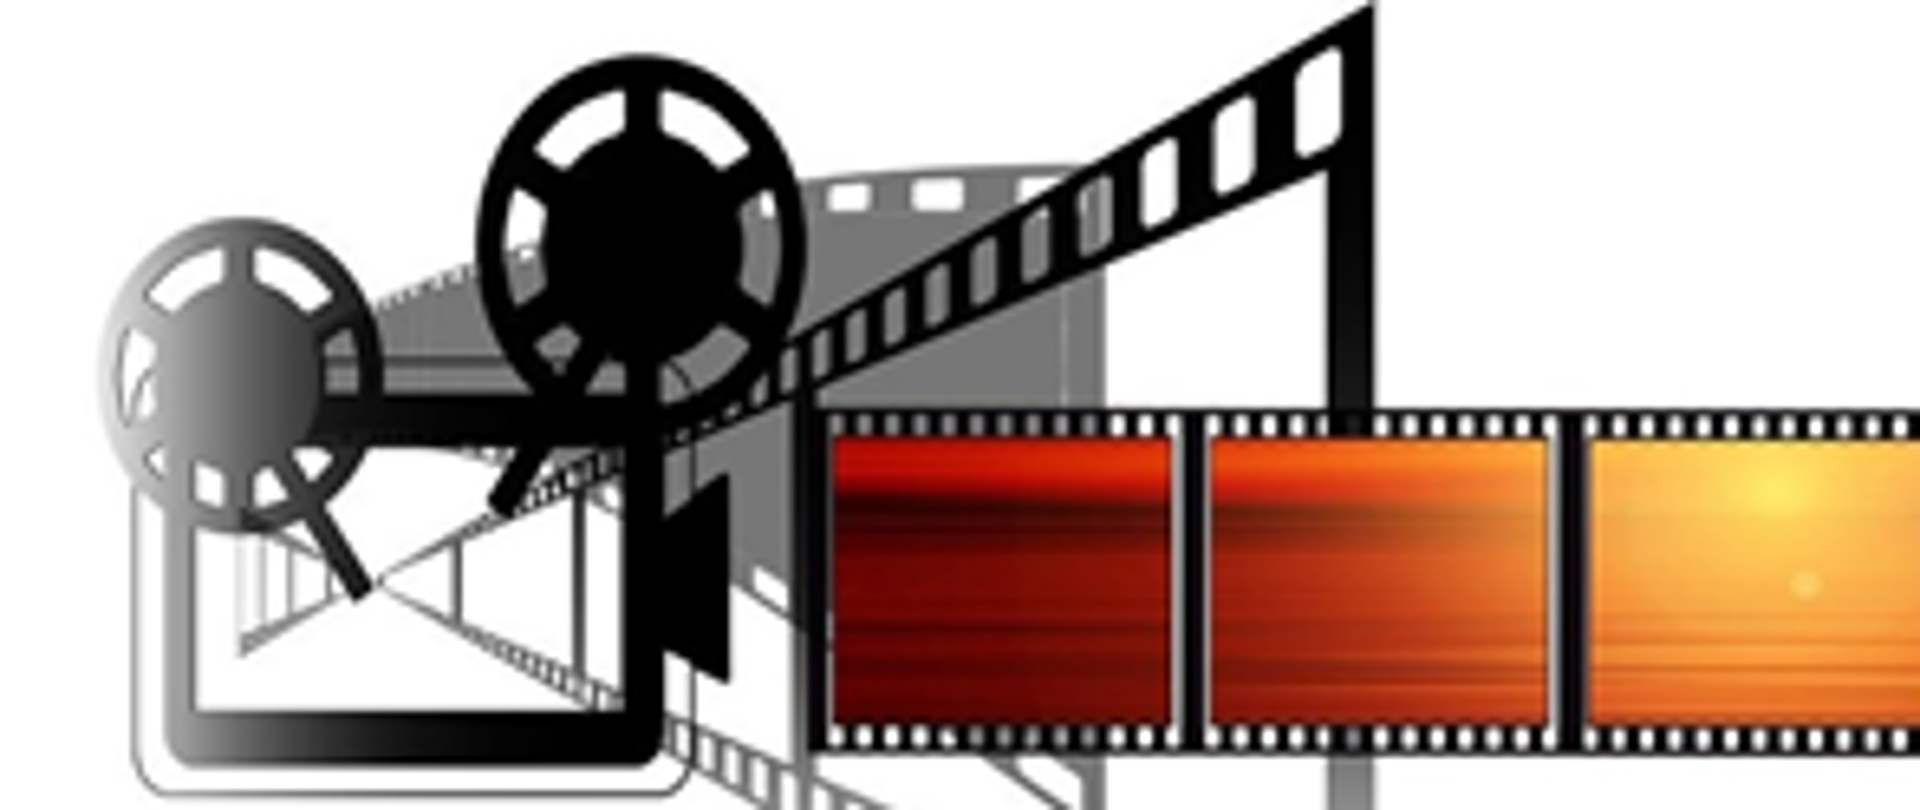 Symbol rzutnika-projektora do wyświetania filmów z taśmy filmowej. Trzy kadry filmu wychodzących z obiejtywy projektora.